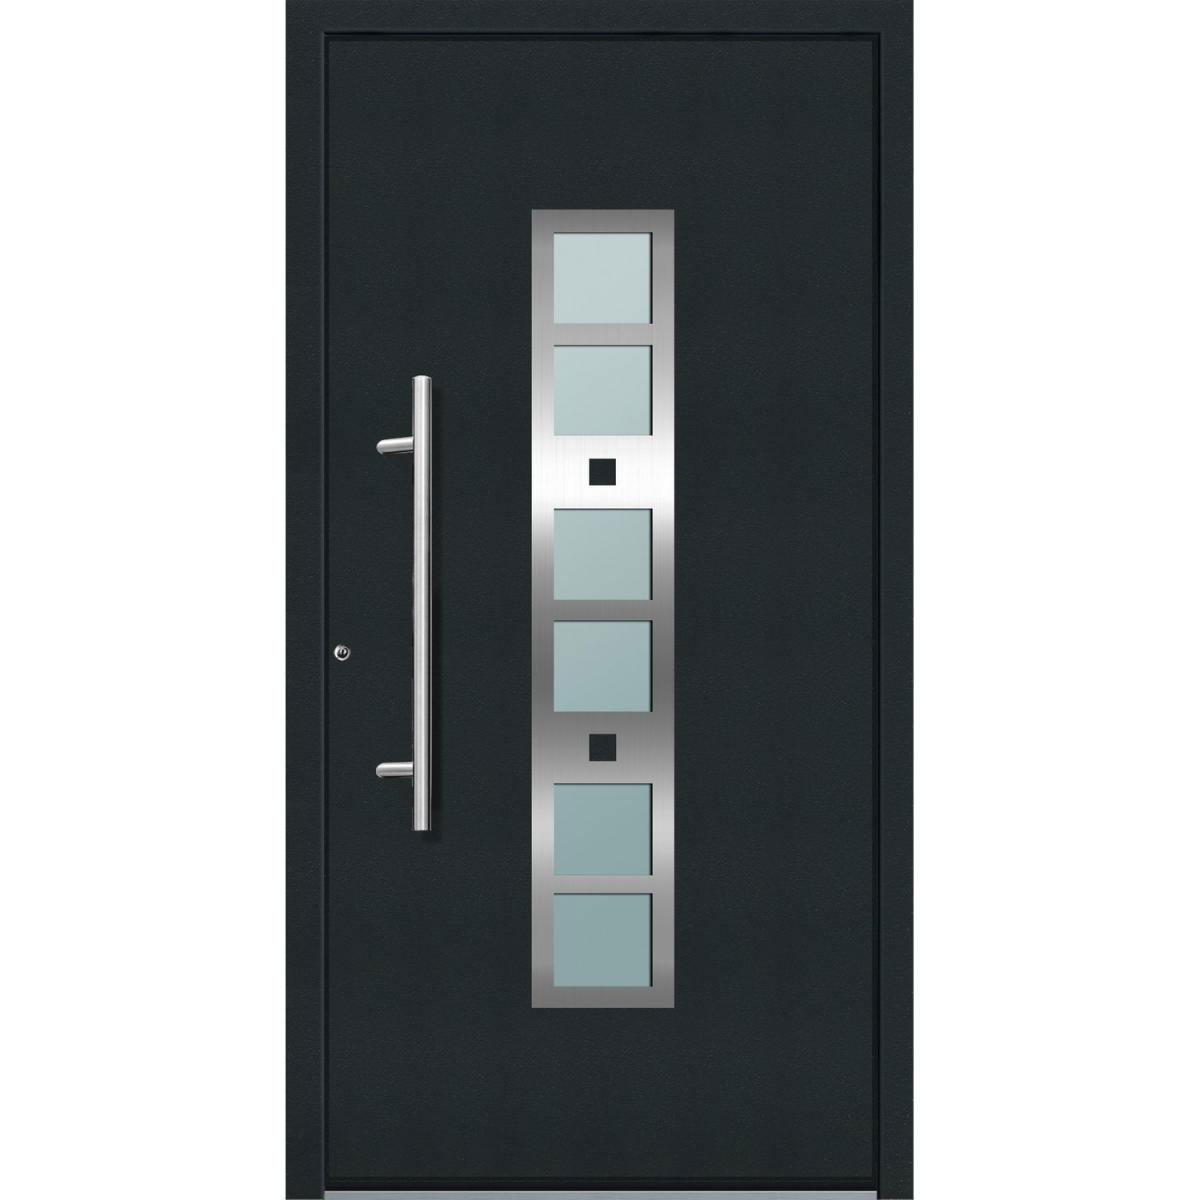 Aluminium Sicherheits-Haustür „Pisa Superior“, 60mm, anthrazit, 110x210 cm, Anschlag links, inkl. Griffset